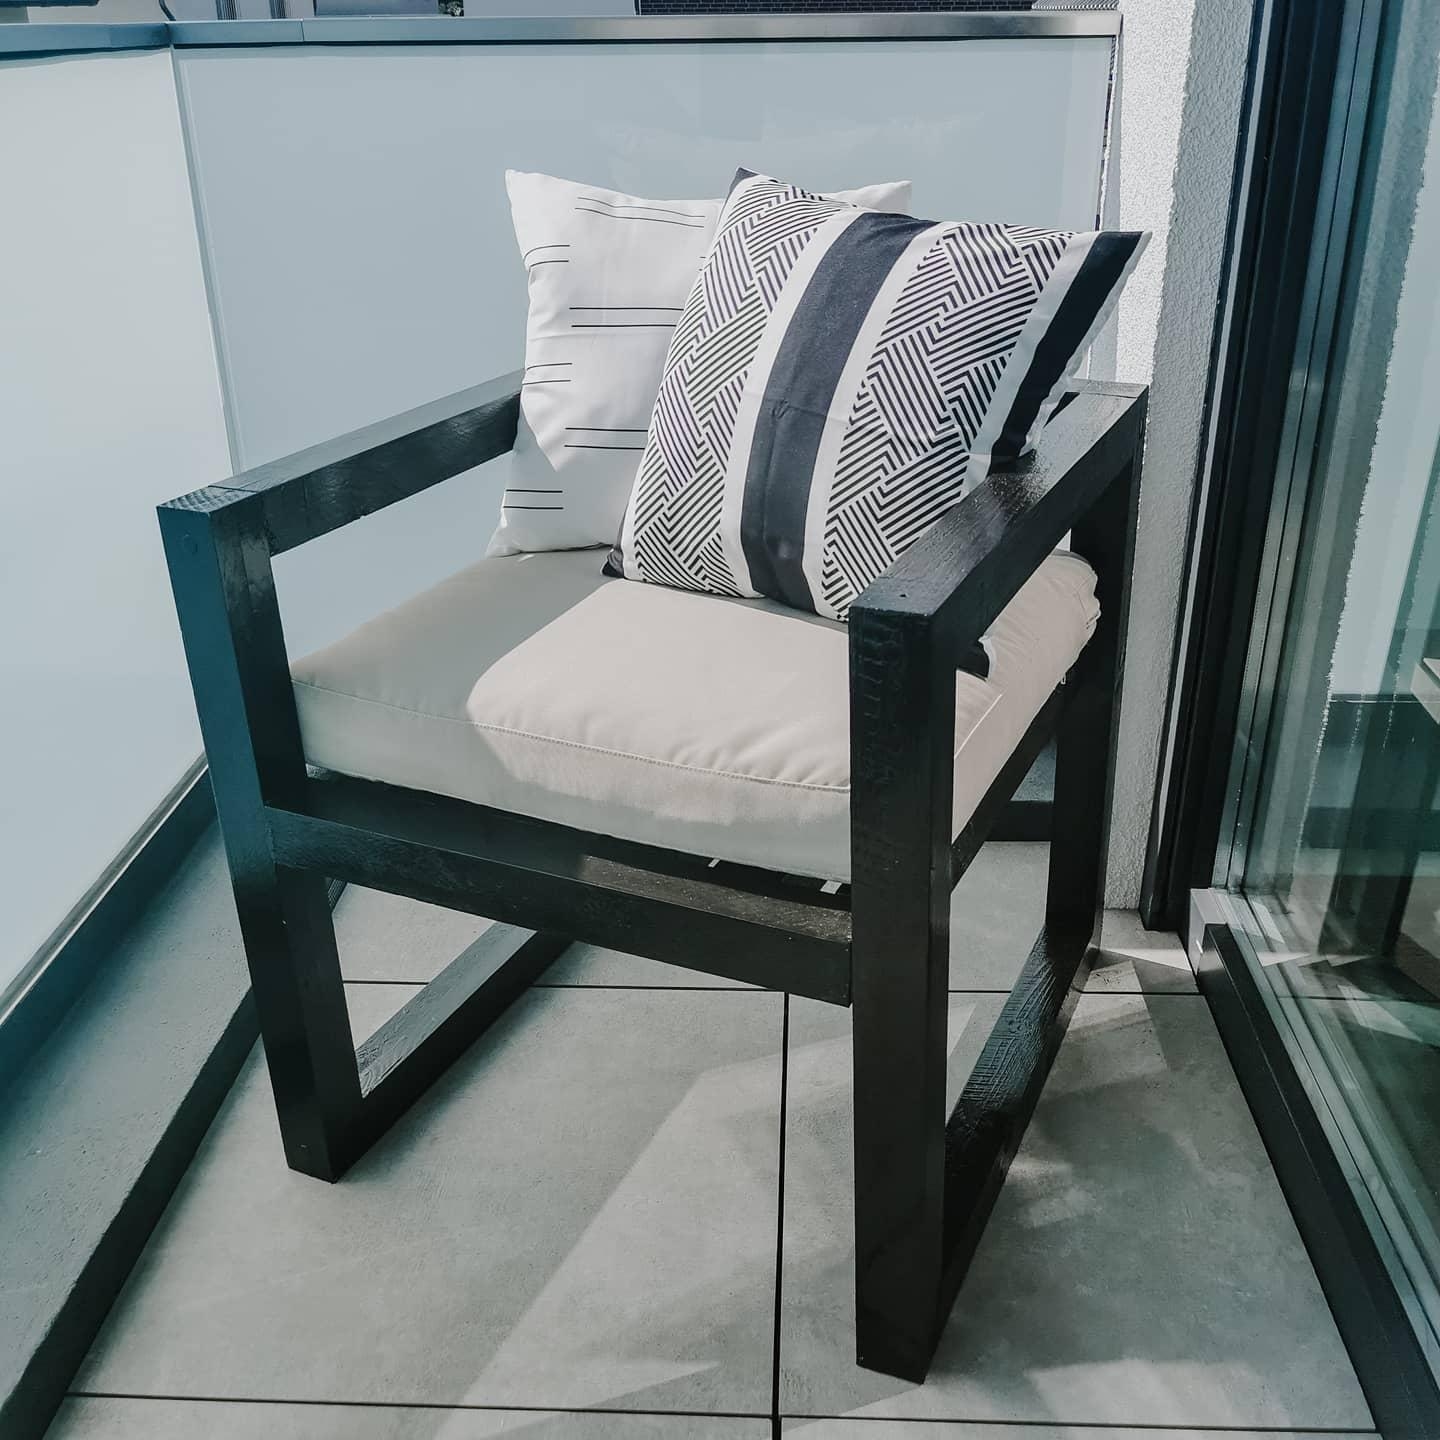 #balkondiy
Aus ein bisschen Konstruktionsholz ist ein gemütlicher Stuhl für den Balkon entstanden 🥰